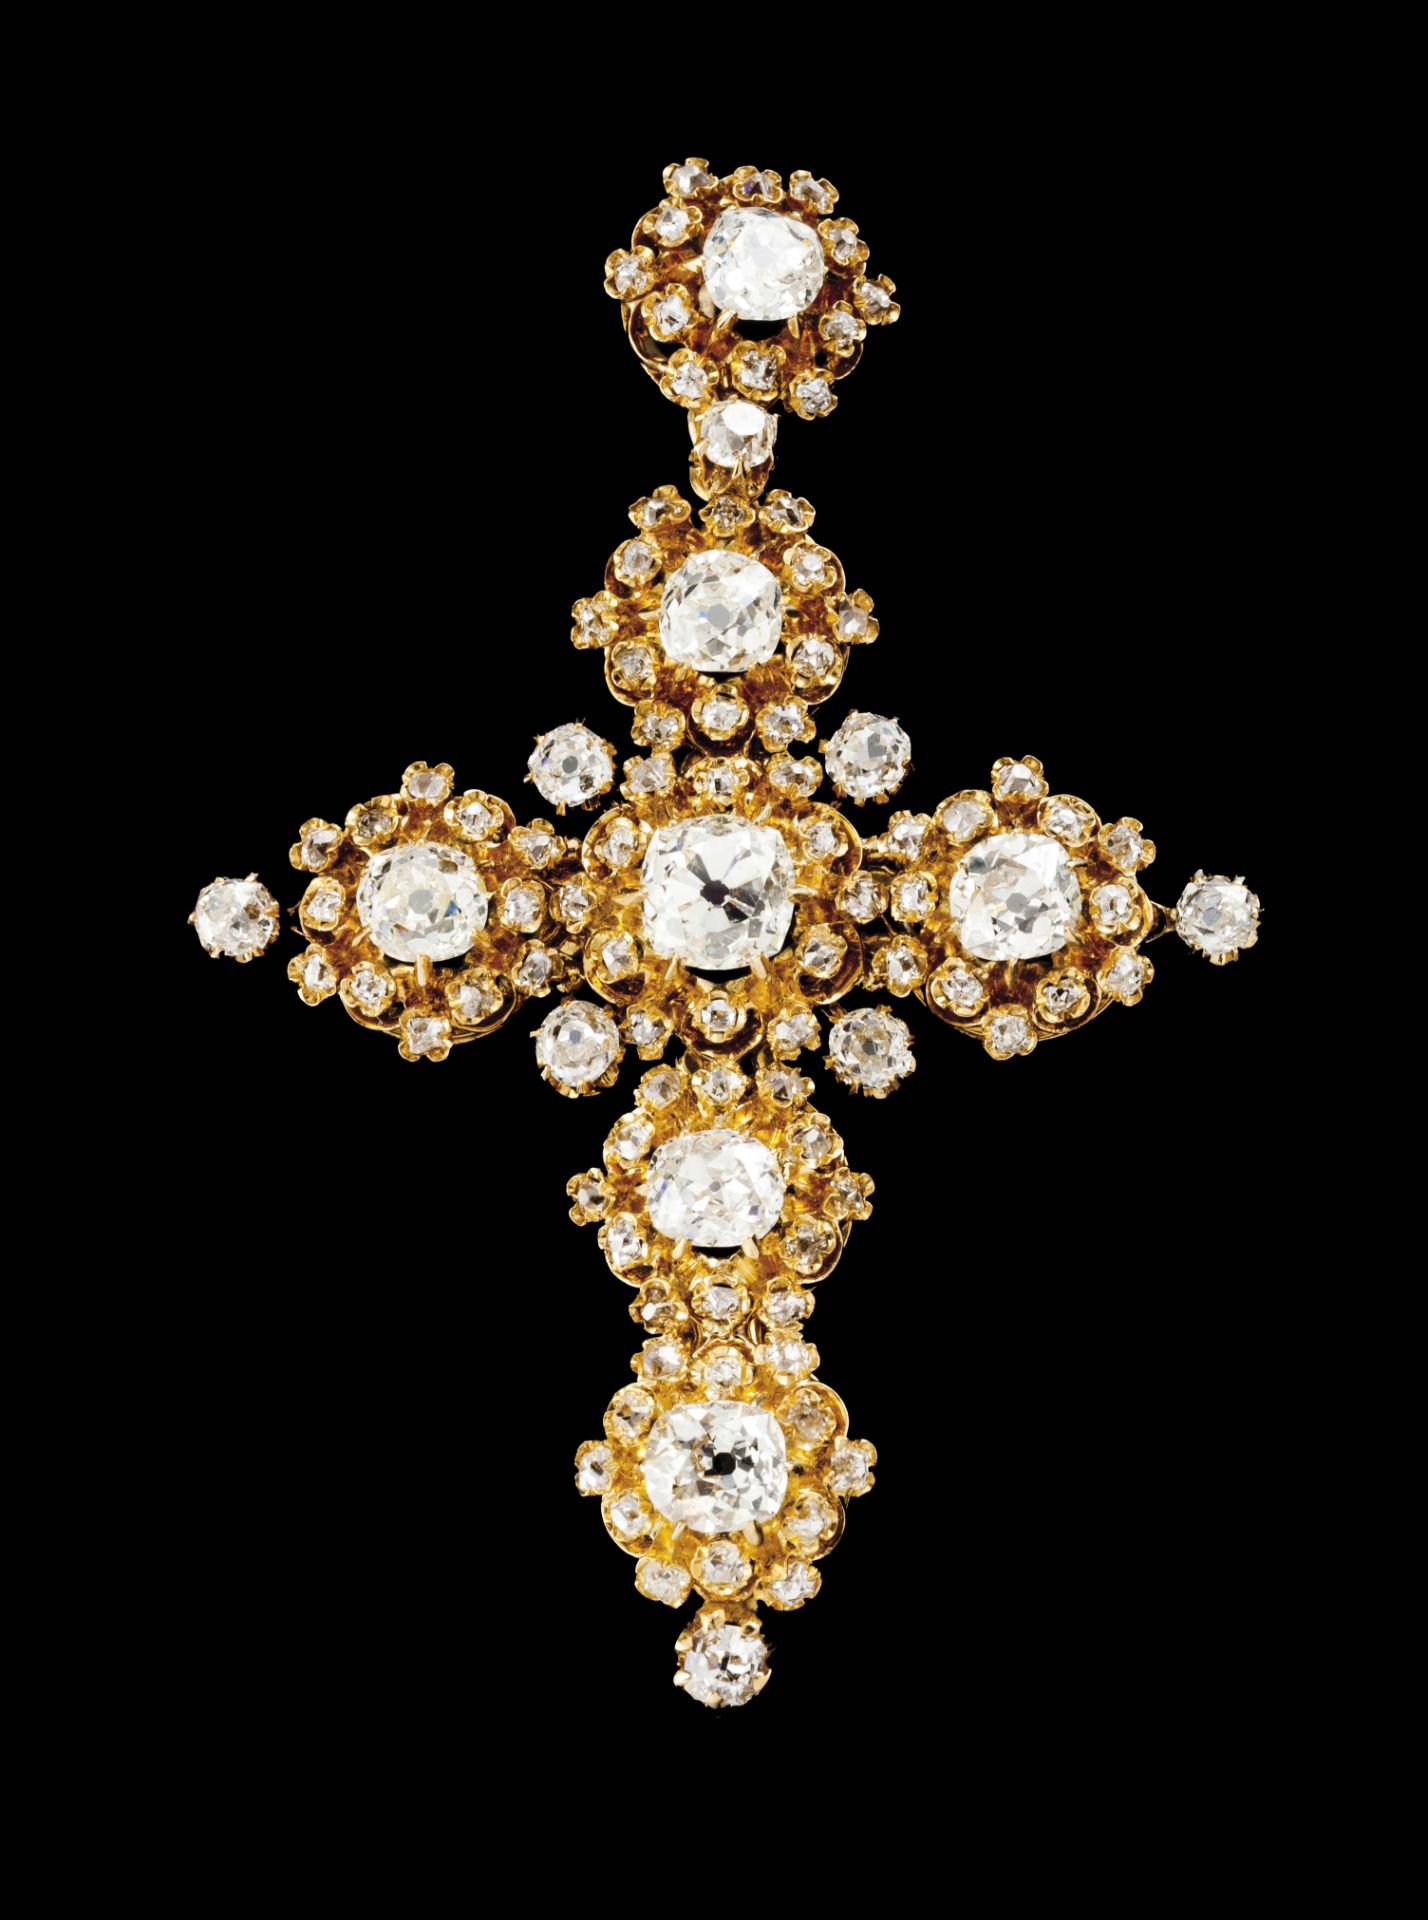 A Baroque cross